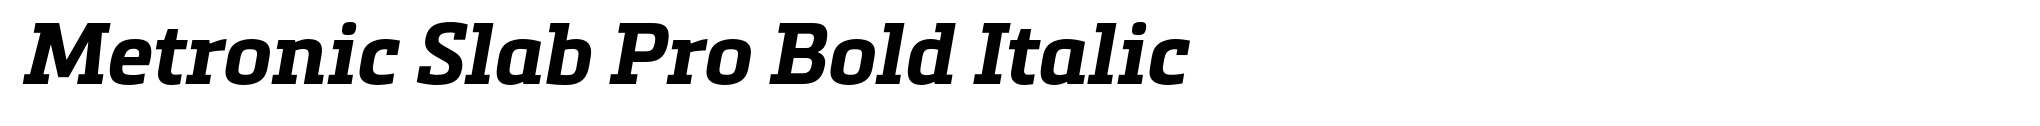 Metronic Slab Pro Bold Italic image